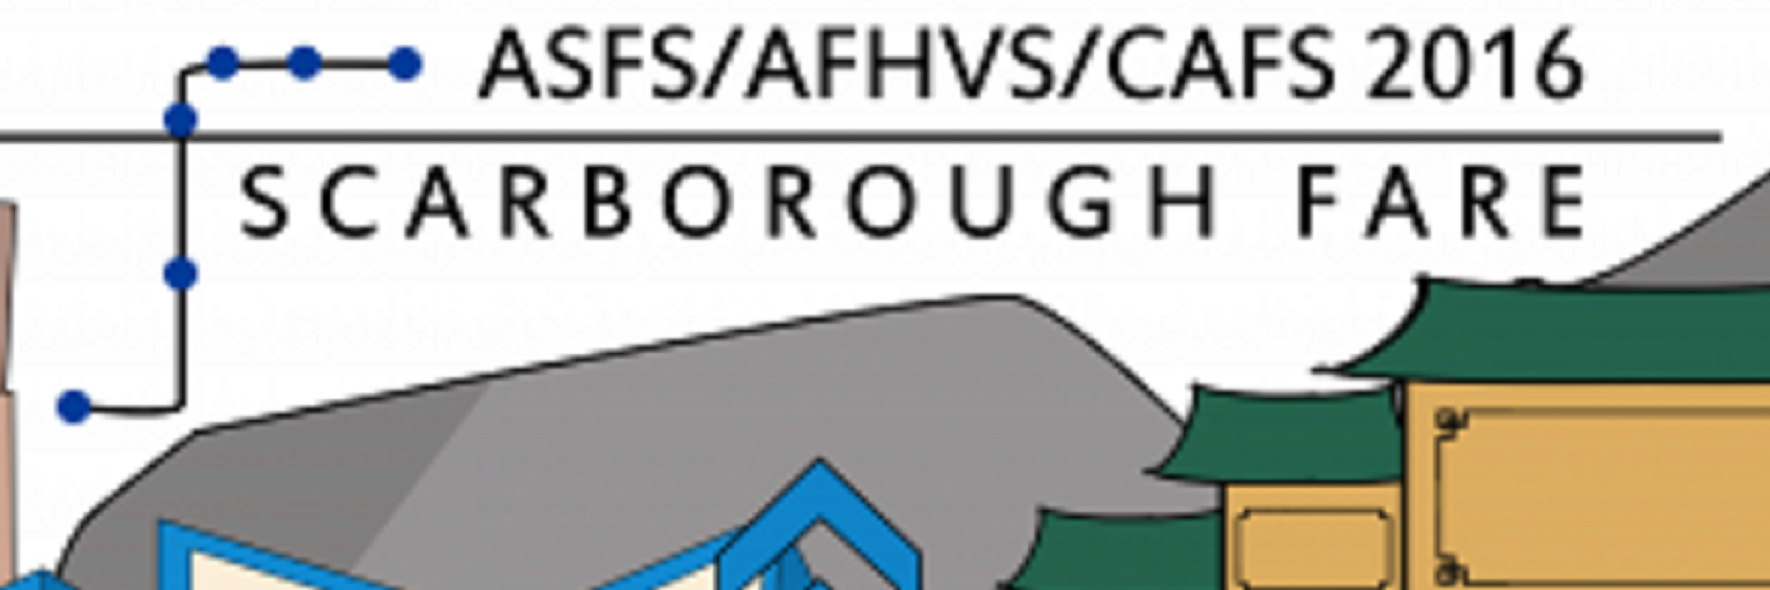 Scarborough Fare 2016 